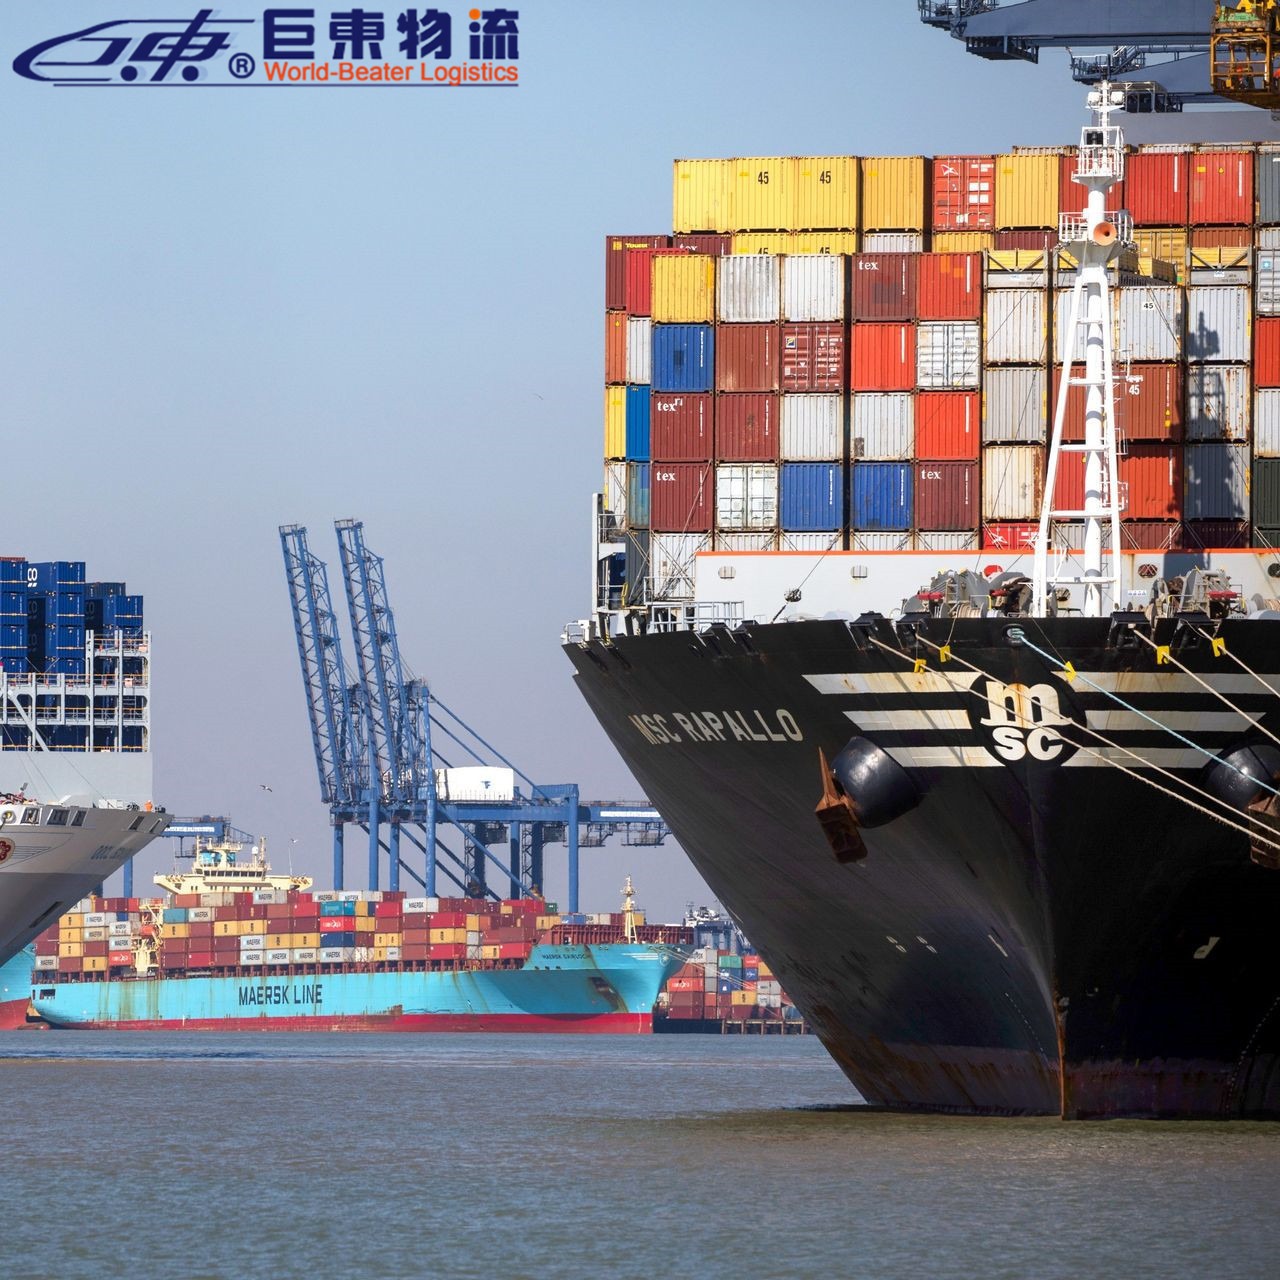 珠海日本海运fba专线 家具韩国海运专线 巨东物流13年海运服务专业可靠